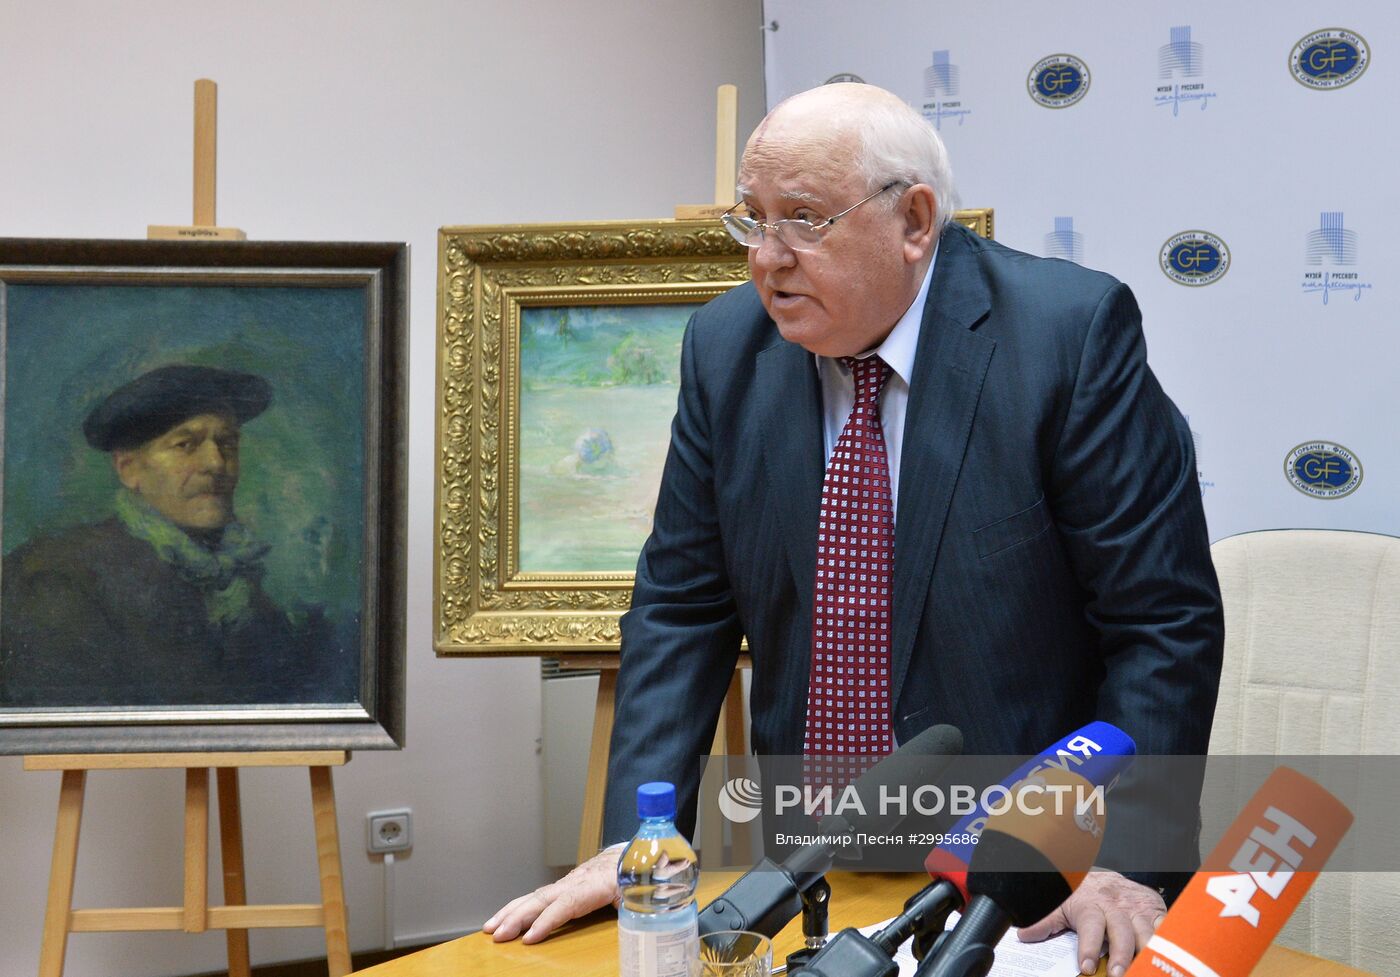 Михаил Горбачев передал картины Музею русского импрессионизма